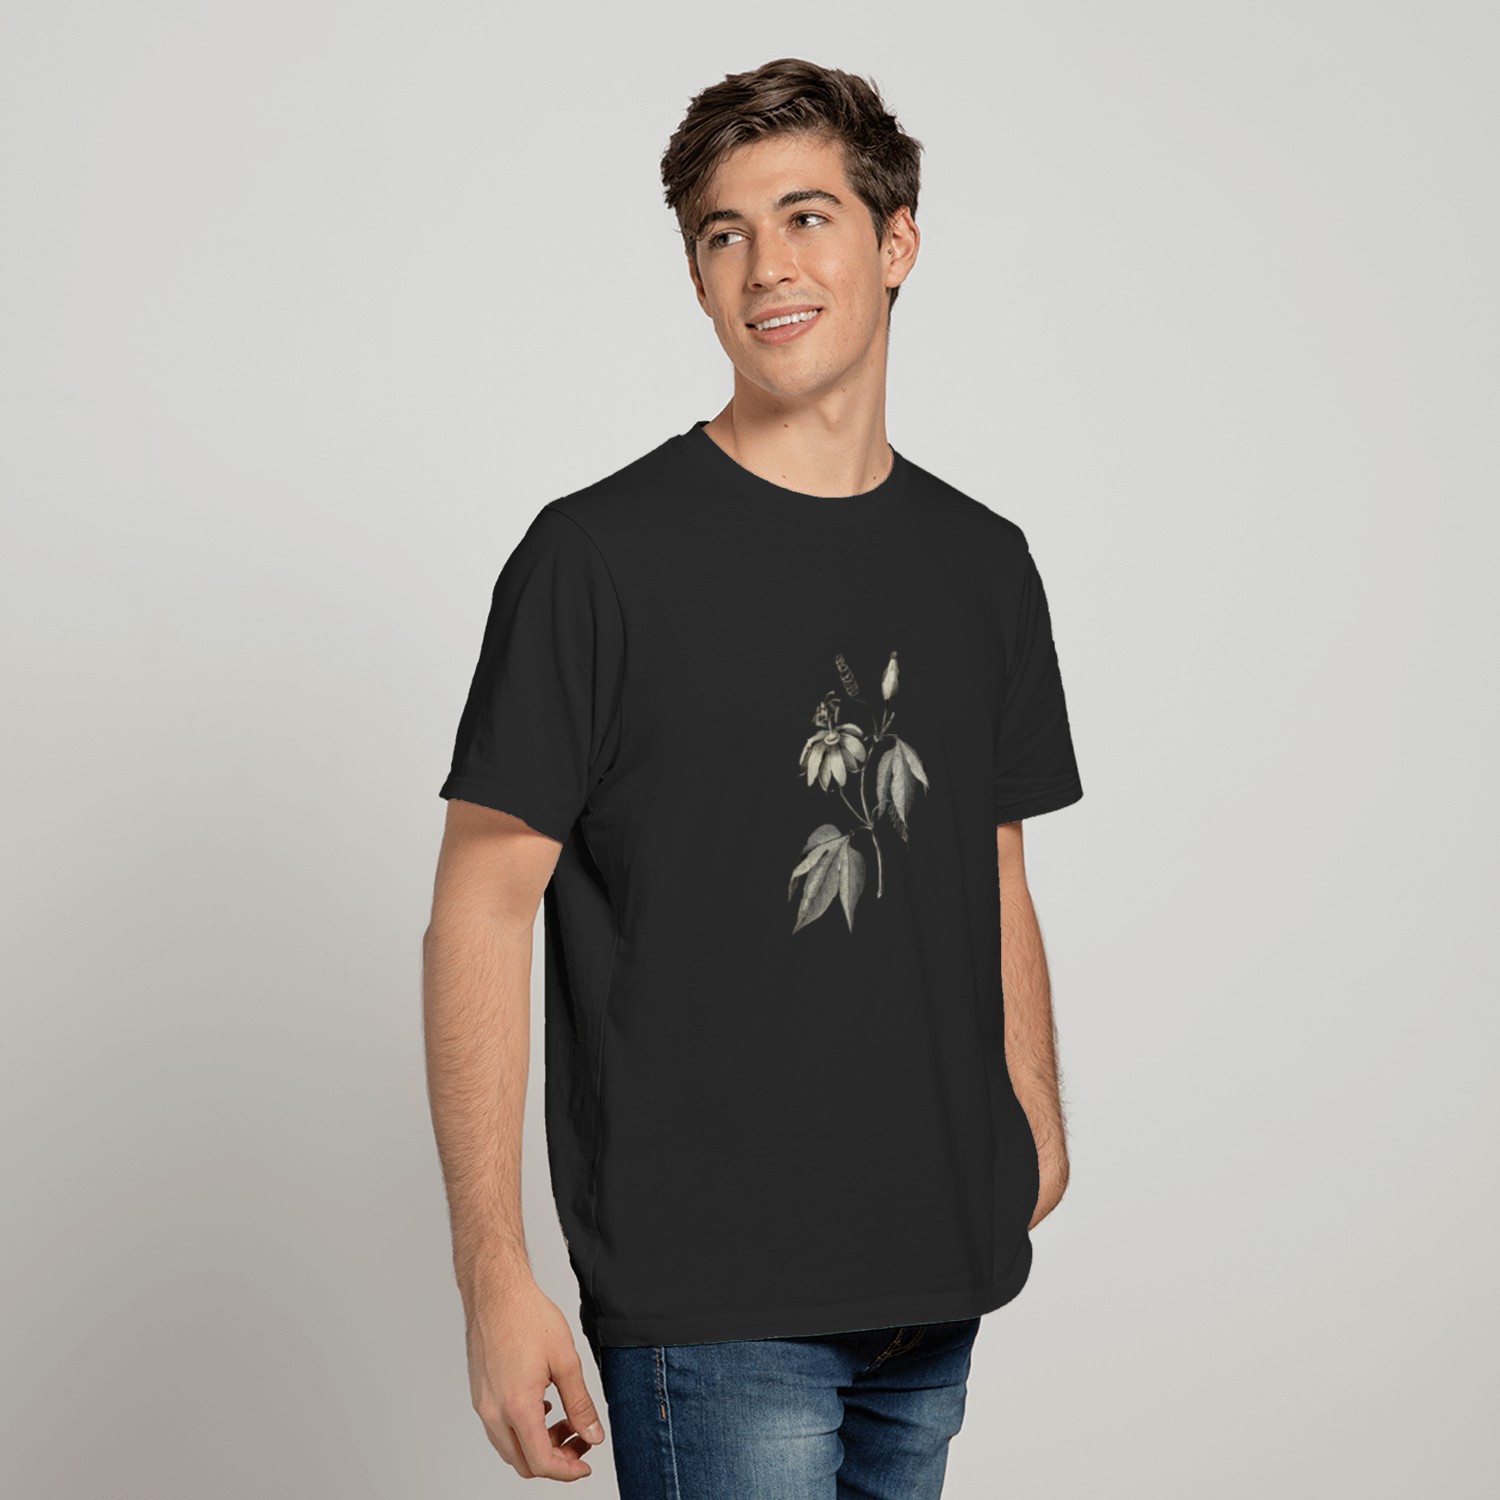 Plant Biodiversity Illustration T-shirt